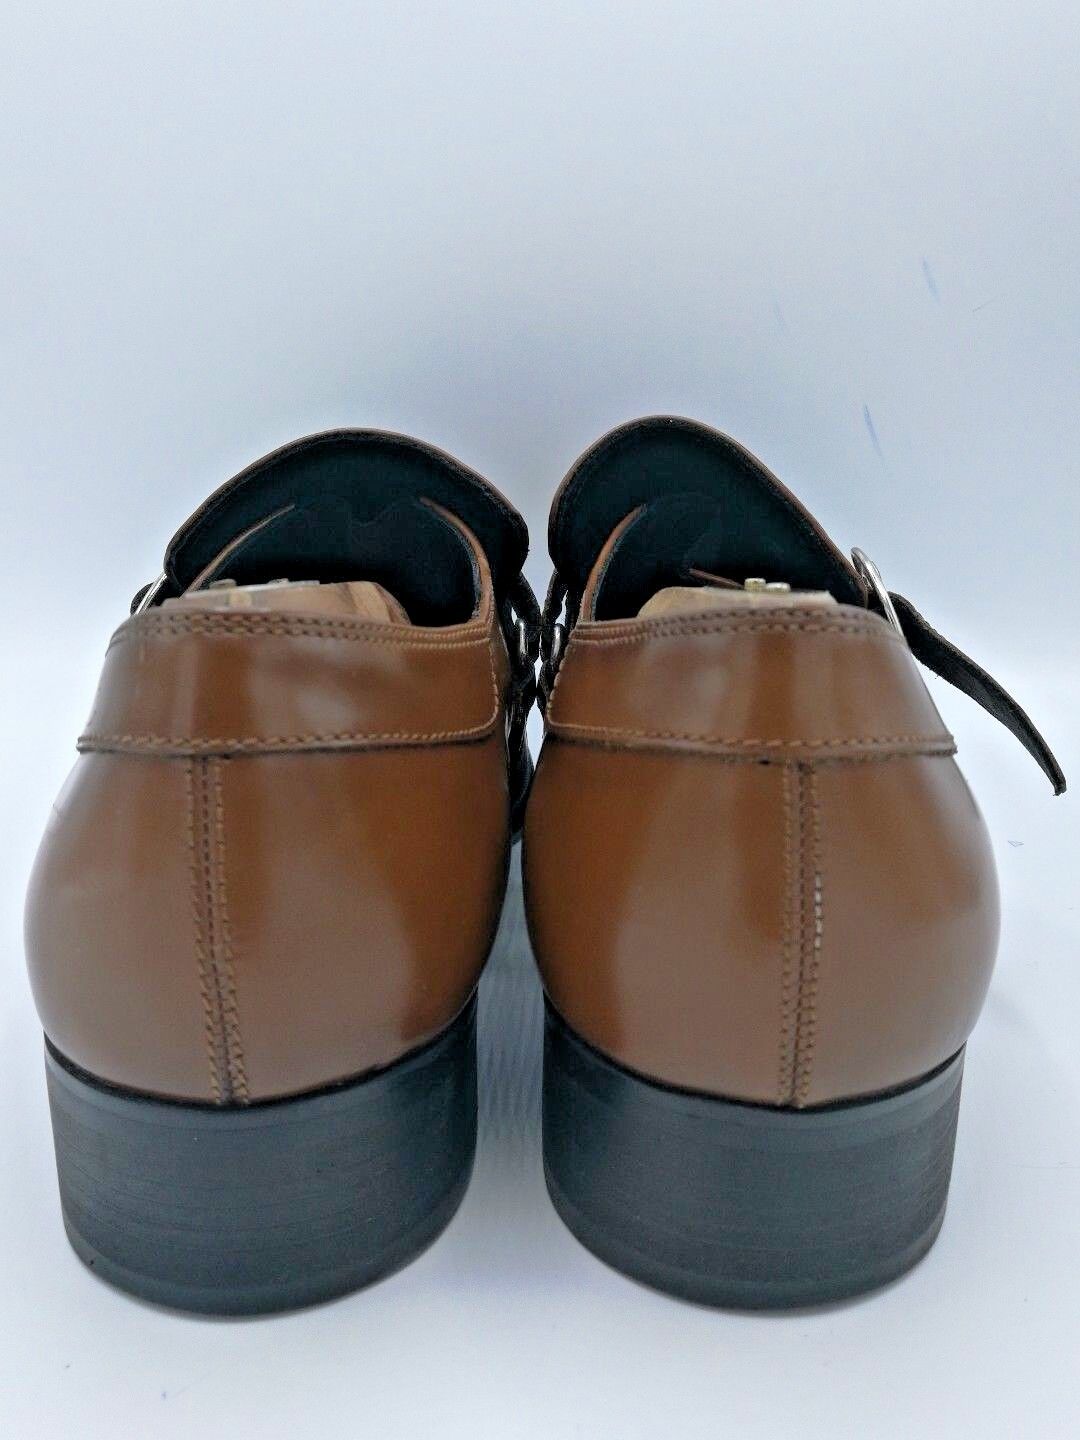 Katharine Hamnett London Men's Shoe KH31541 Brown/ Long nose Size 10.5-11